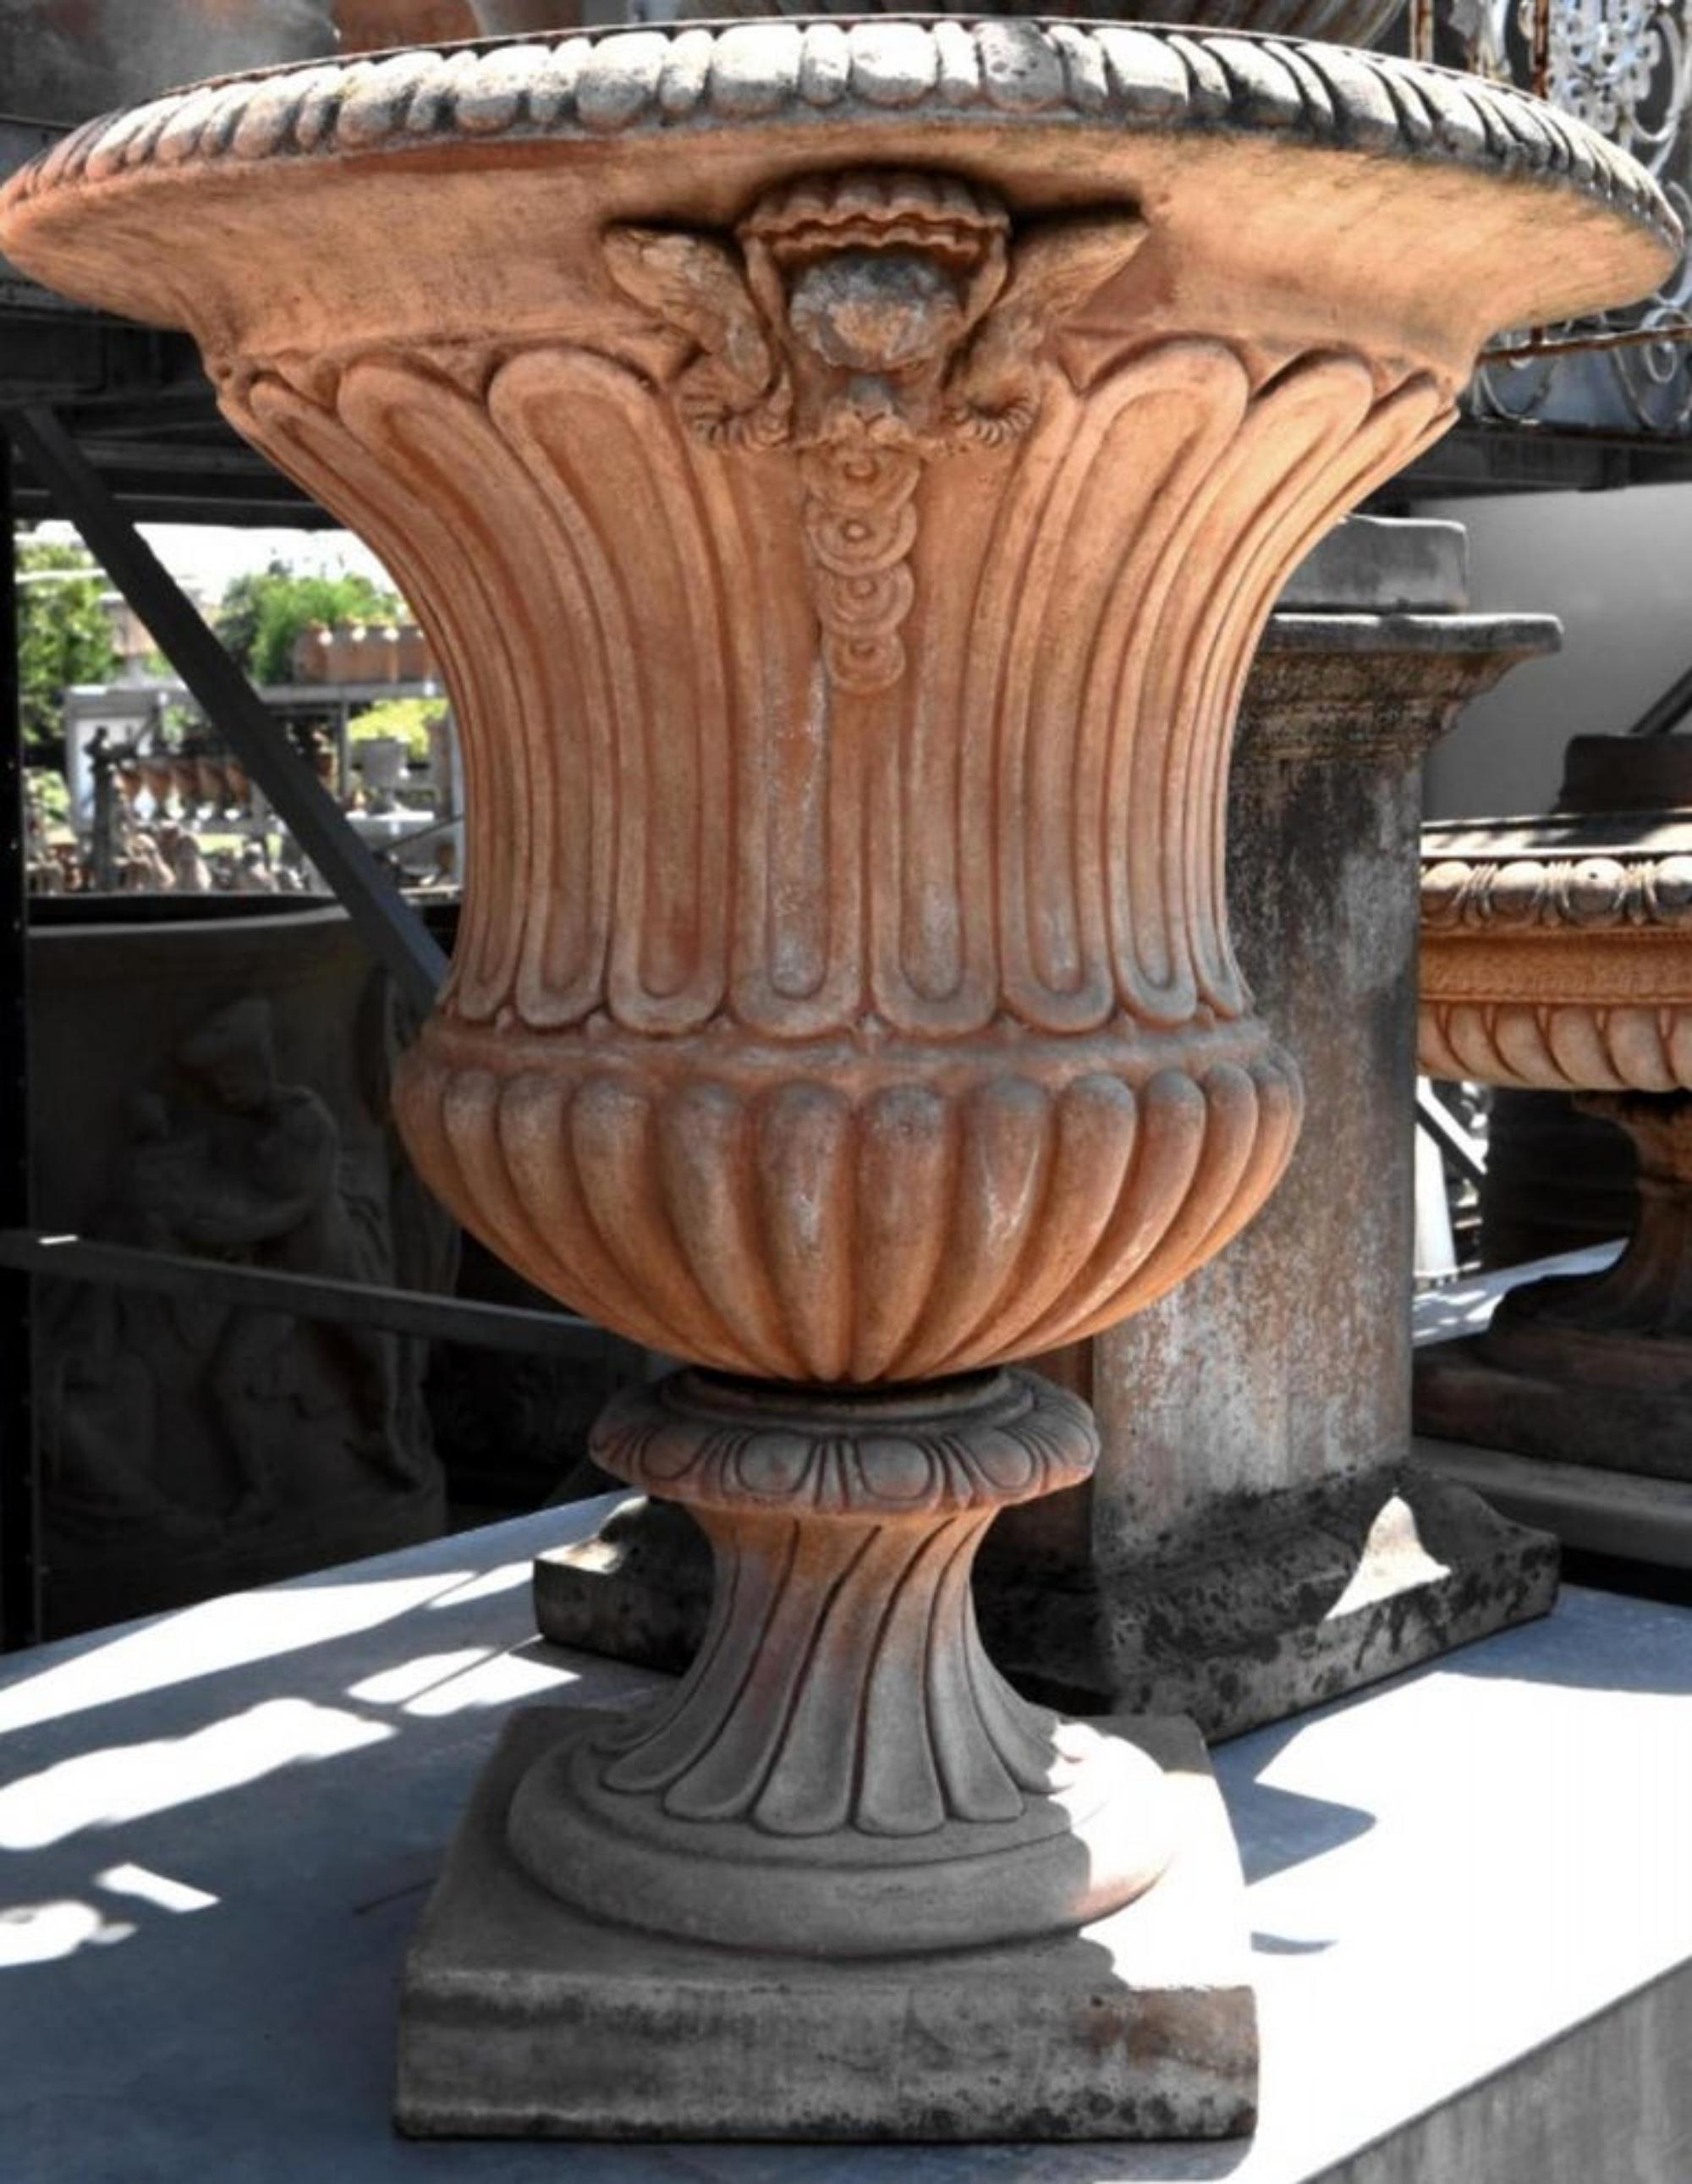 Grand vase médicéen gobelet en terre cuite baccellato, début du 20e siècle
Mesures : hauteur 80 cm
diamètre 72 cm
poids 30 kg
Matériau : terre cuite.